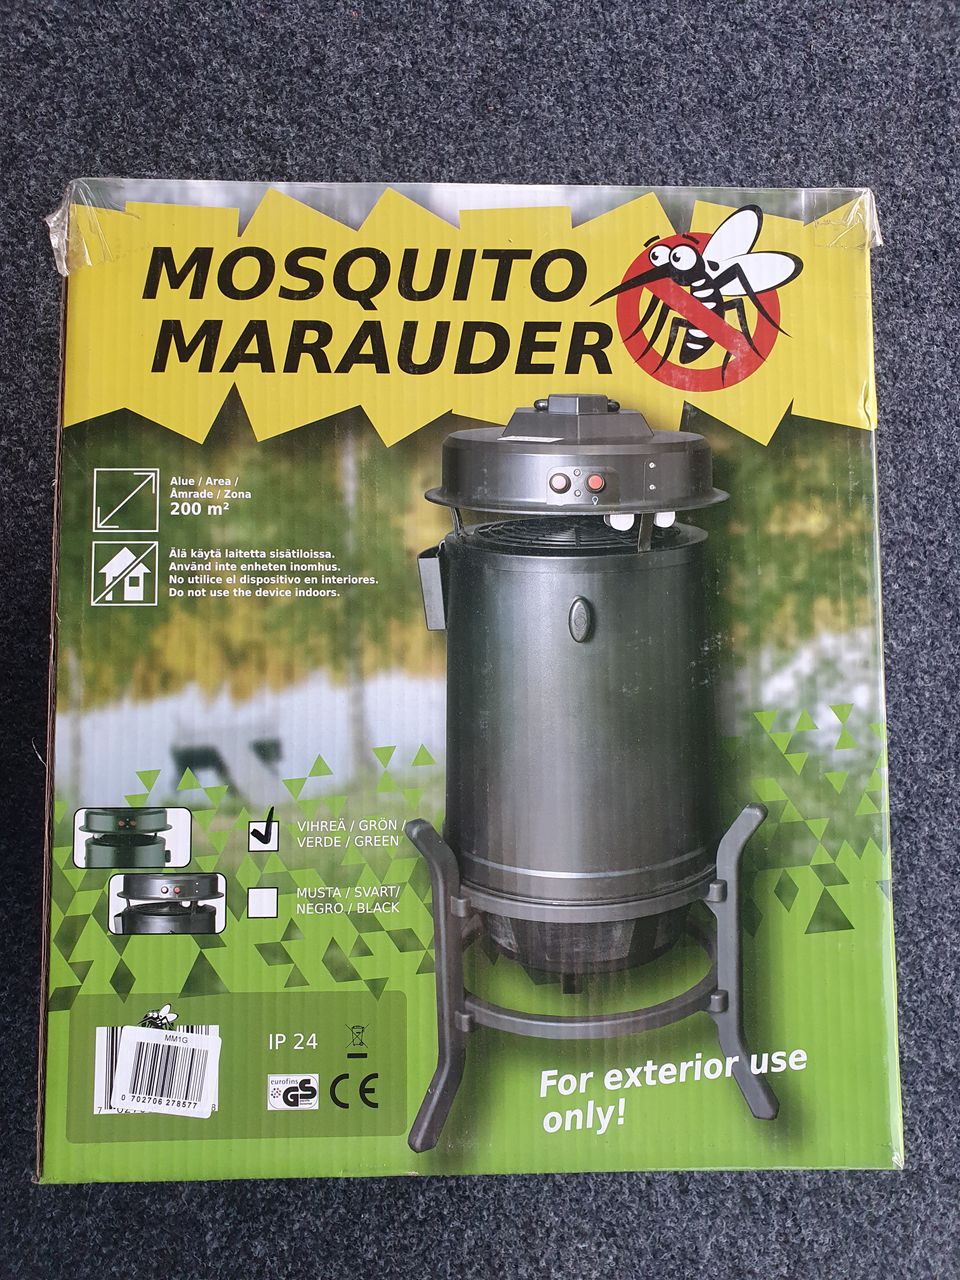 Mosquito Marauder